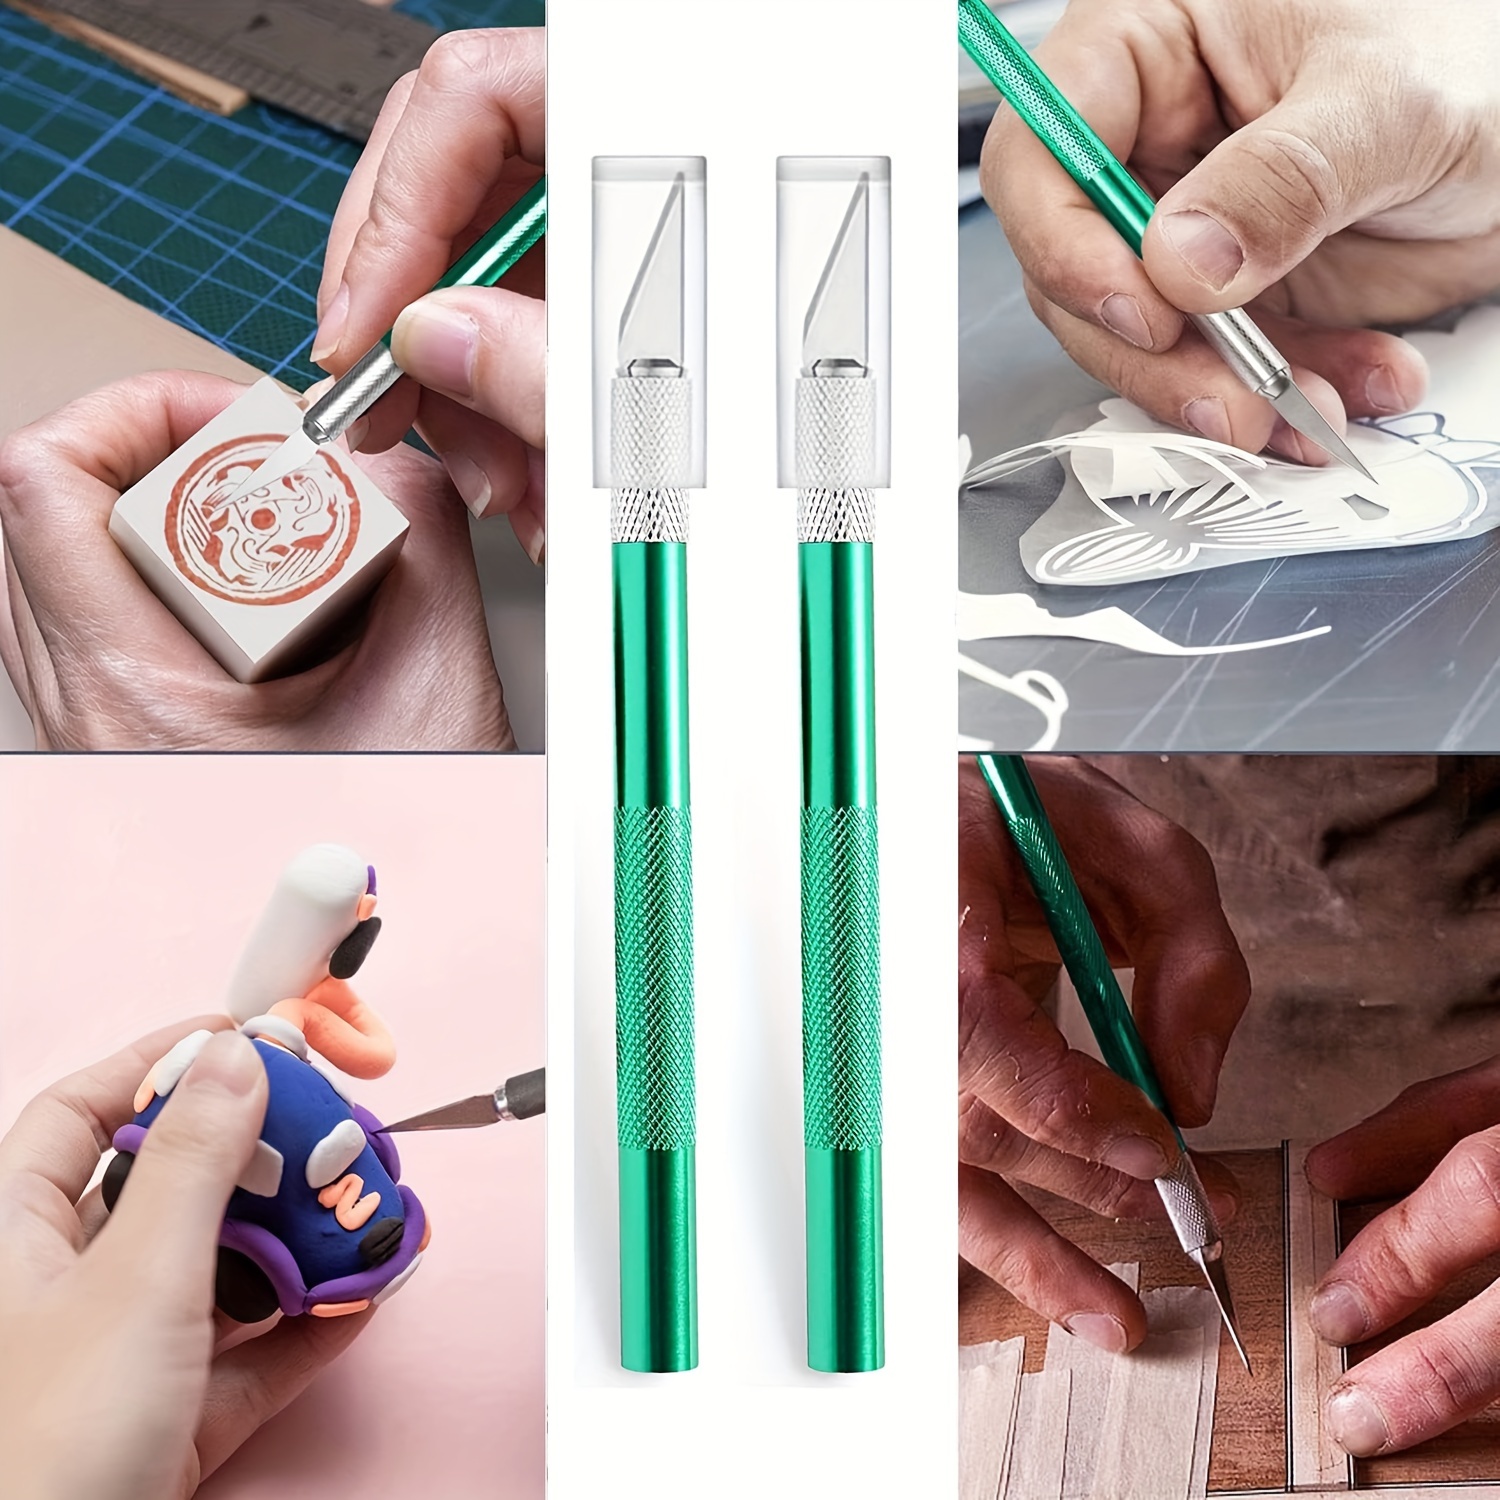 Acquista Tagliacarte in legno, coltello a penna, bisturi, lame in acciaio,  coltelli per incisione, per disegni artistici artigianali